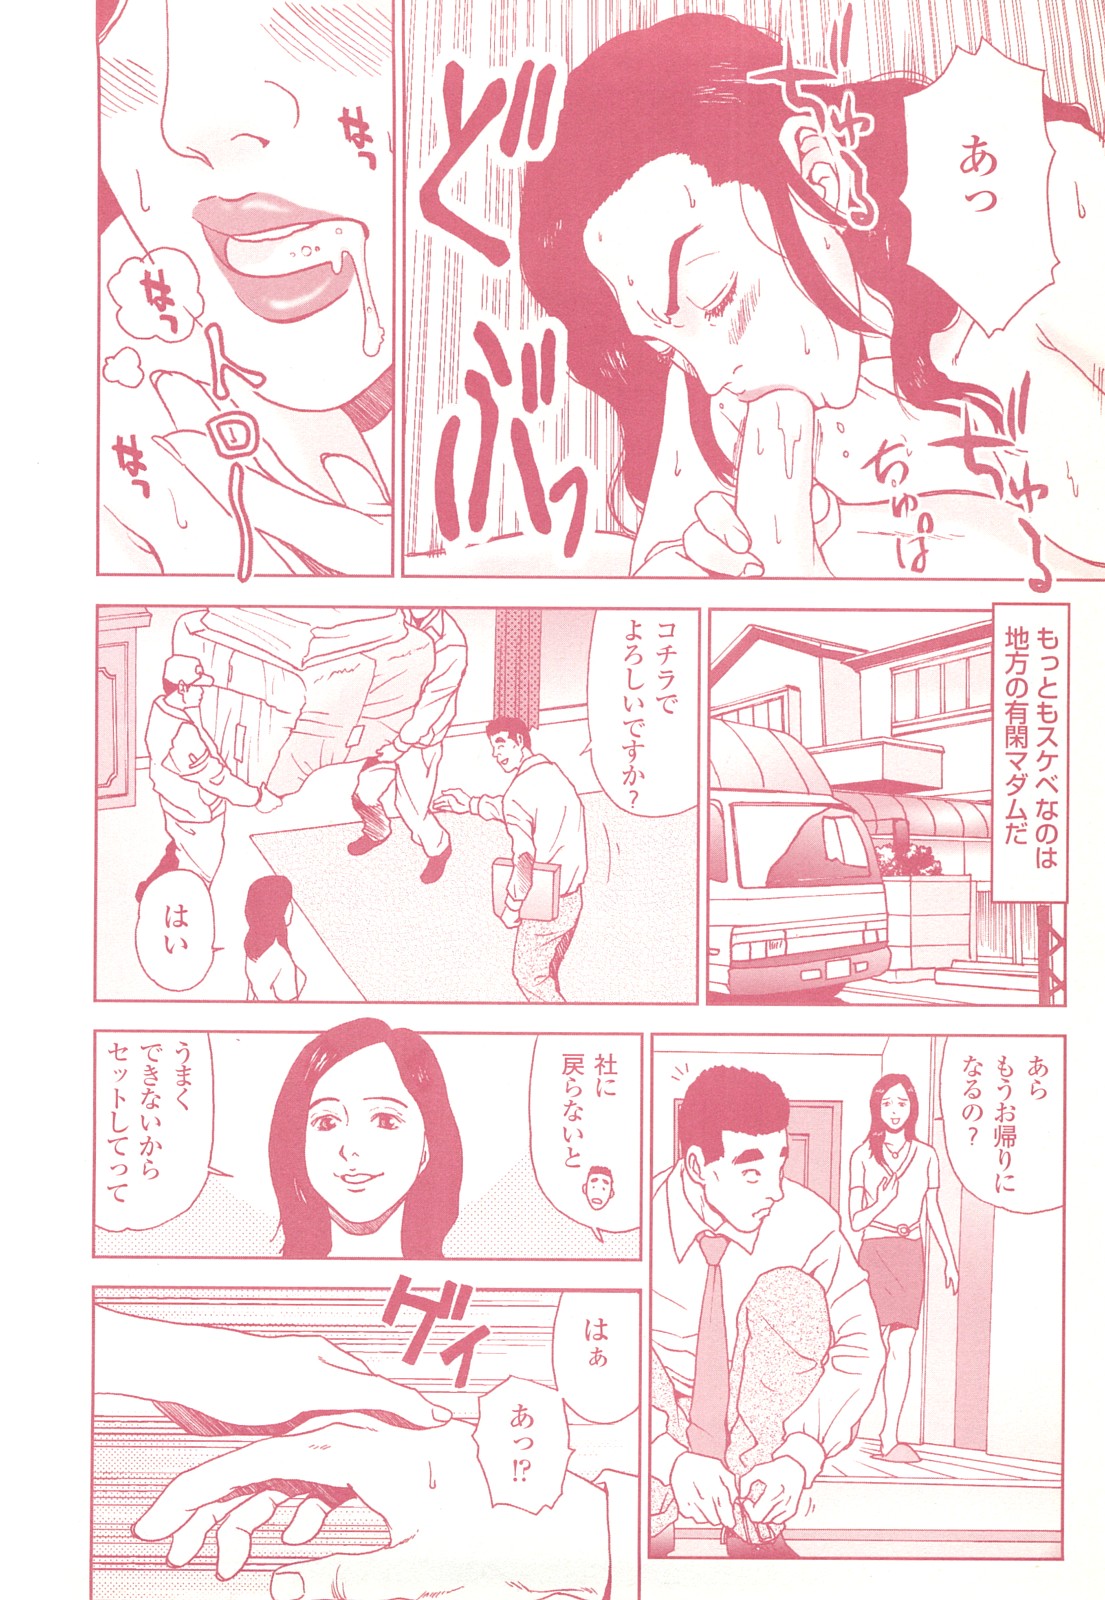 コミック裏モノJAPANVol.18今井のりたつオンライン号